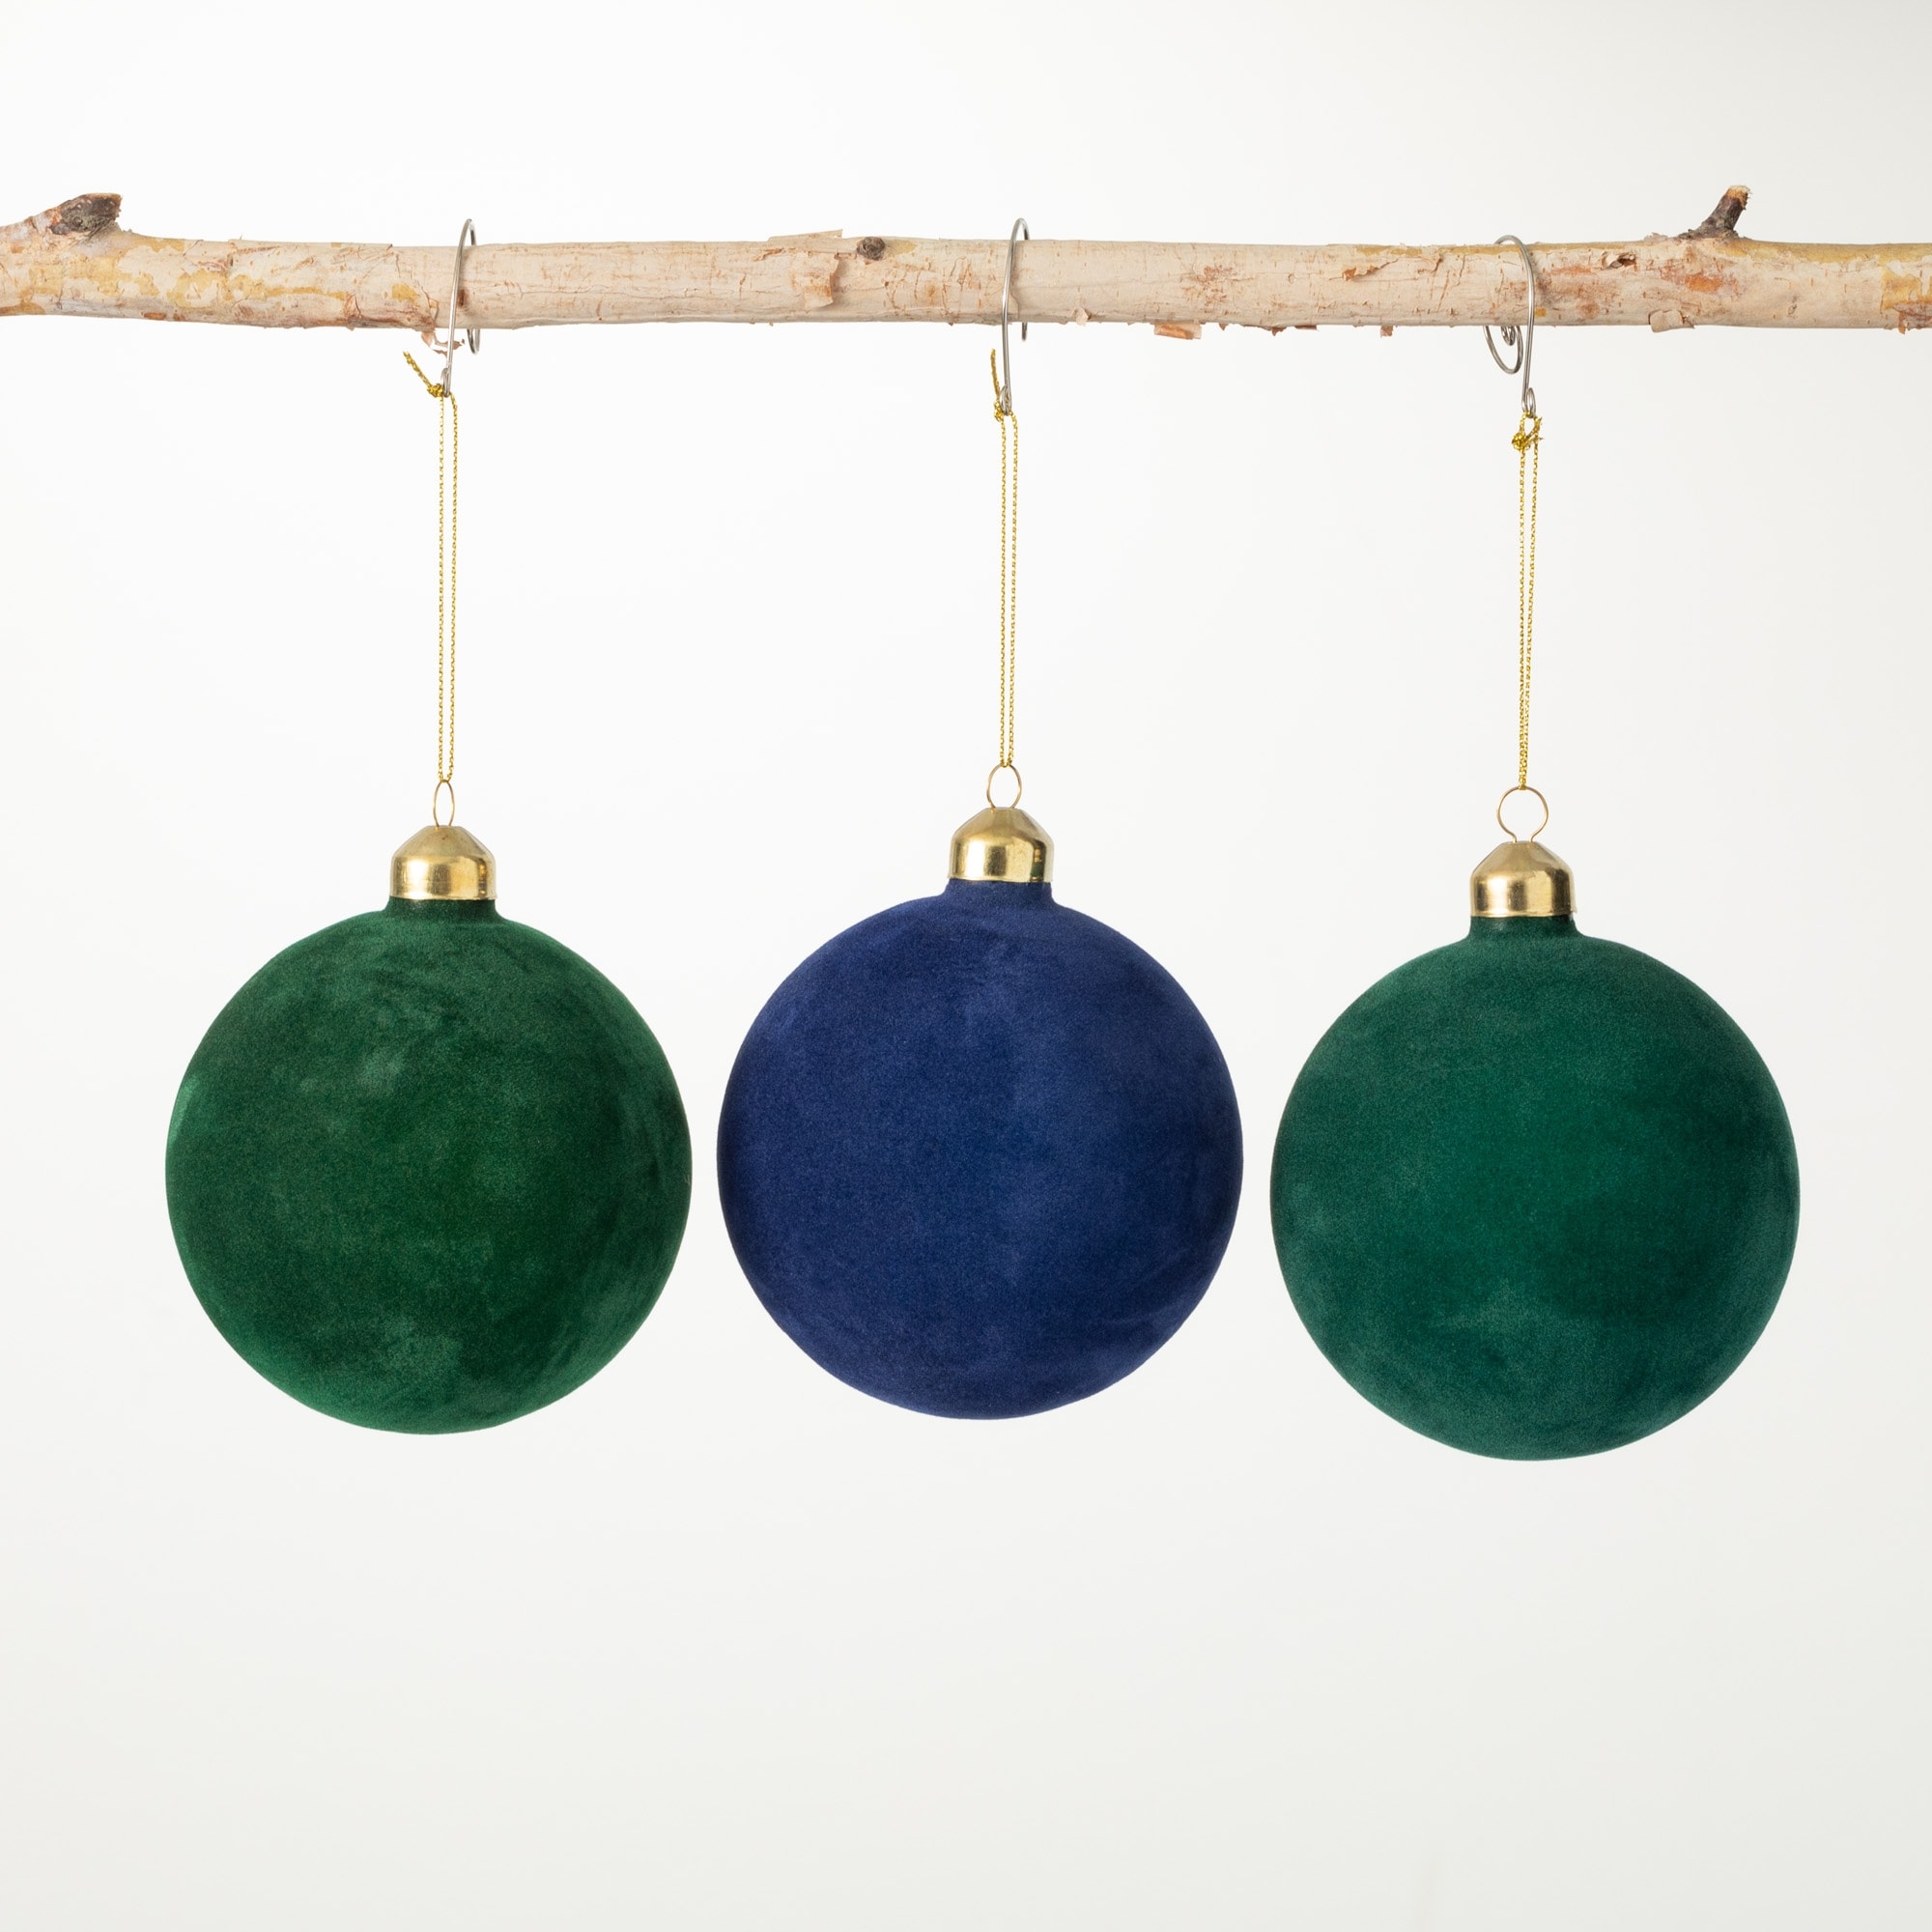 Velvet Ball Ornaments - Set of 4